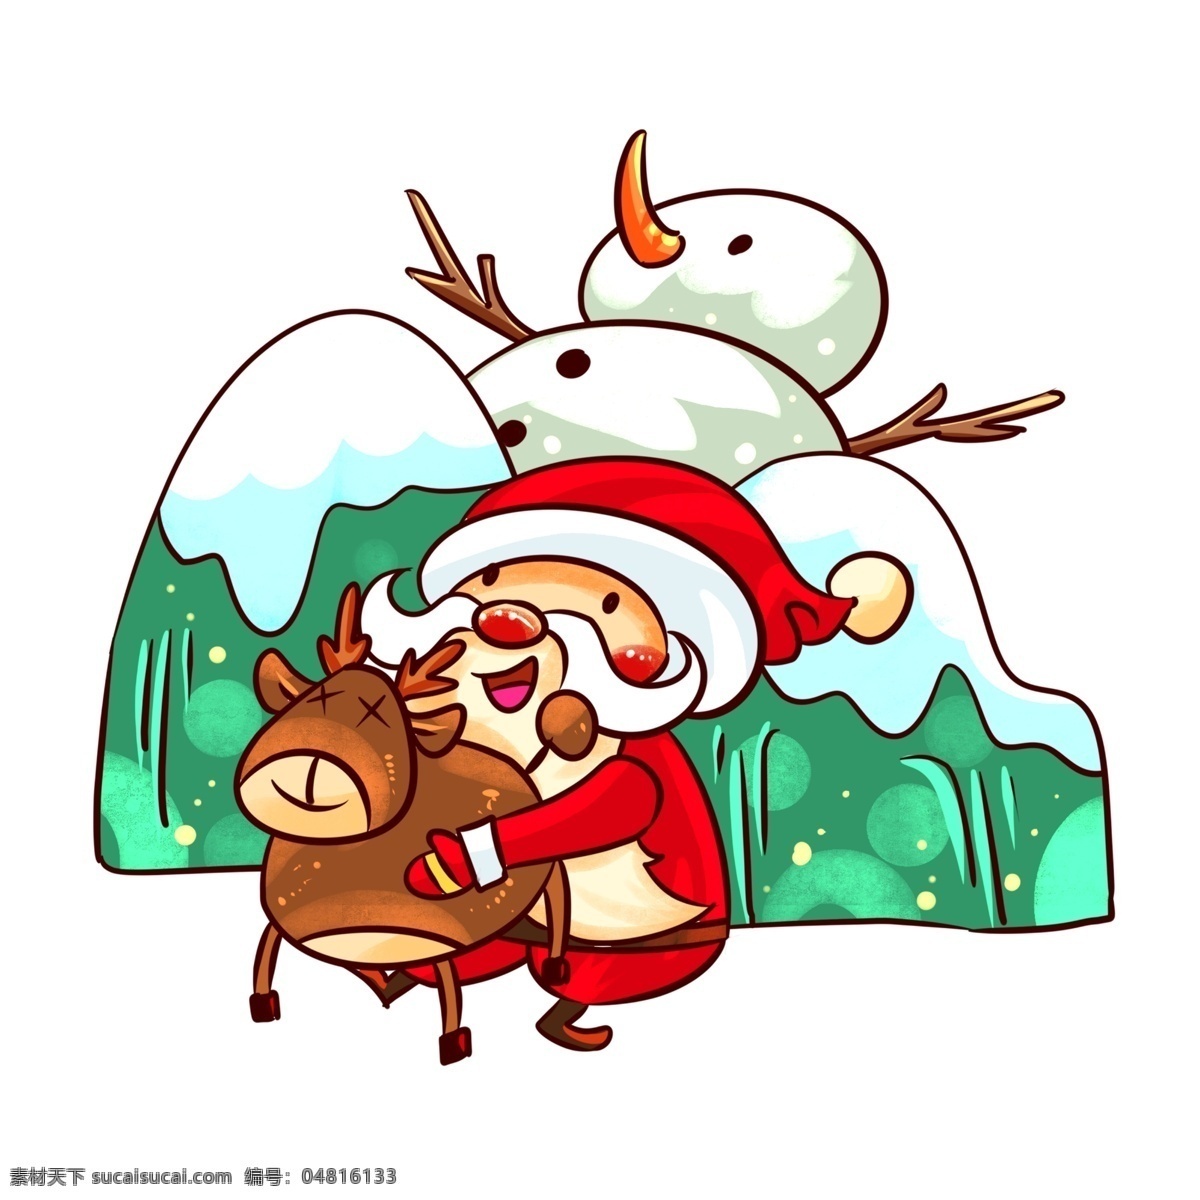 圣诞节 圣诞老人 抱 麋鹿 手绘 插画 手绘送礼物 礼物 圣诞节雪人 雪人 收礼 物 小朋友